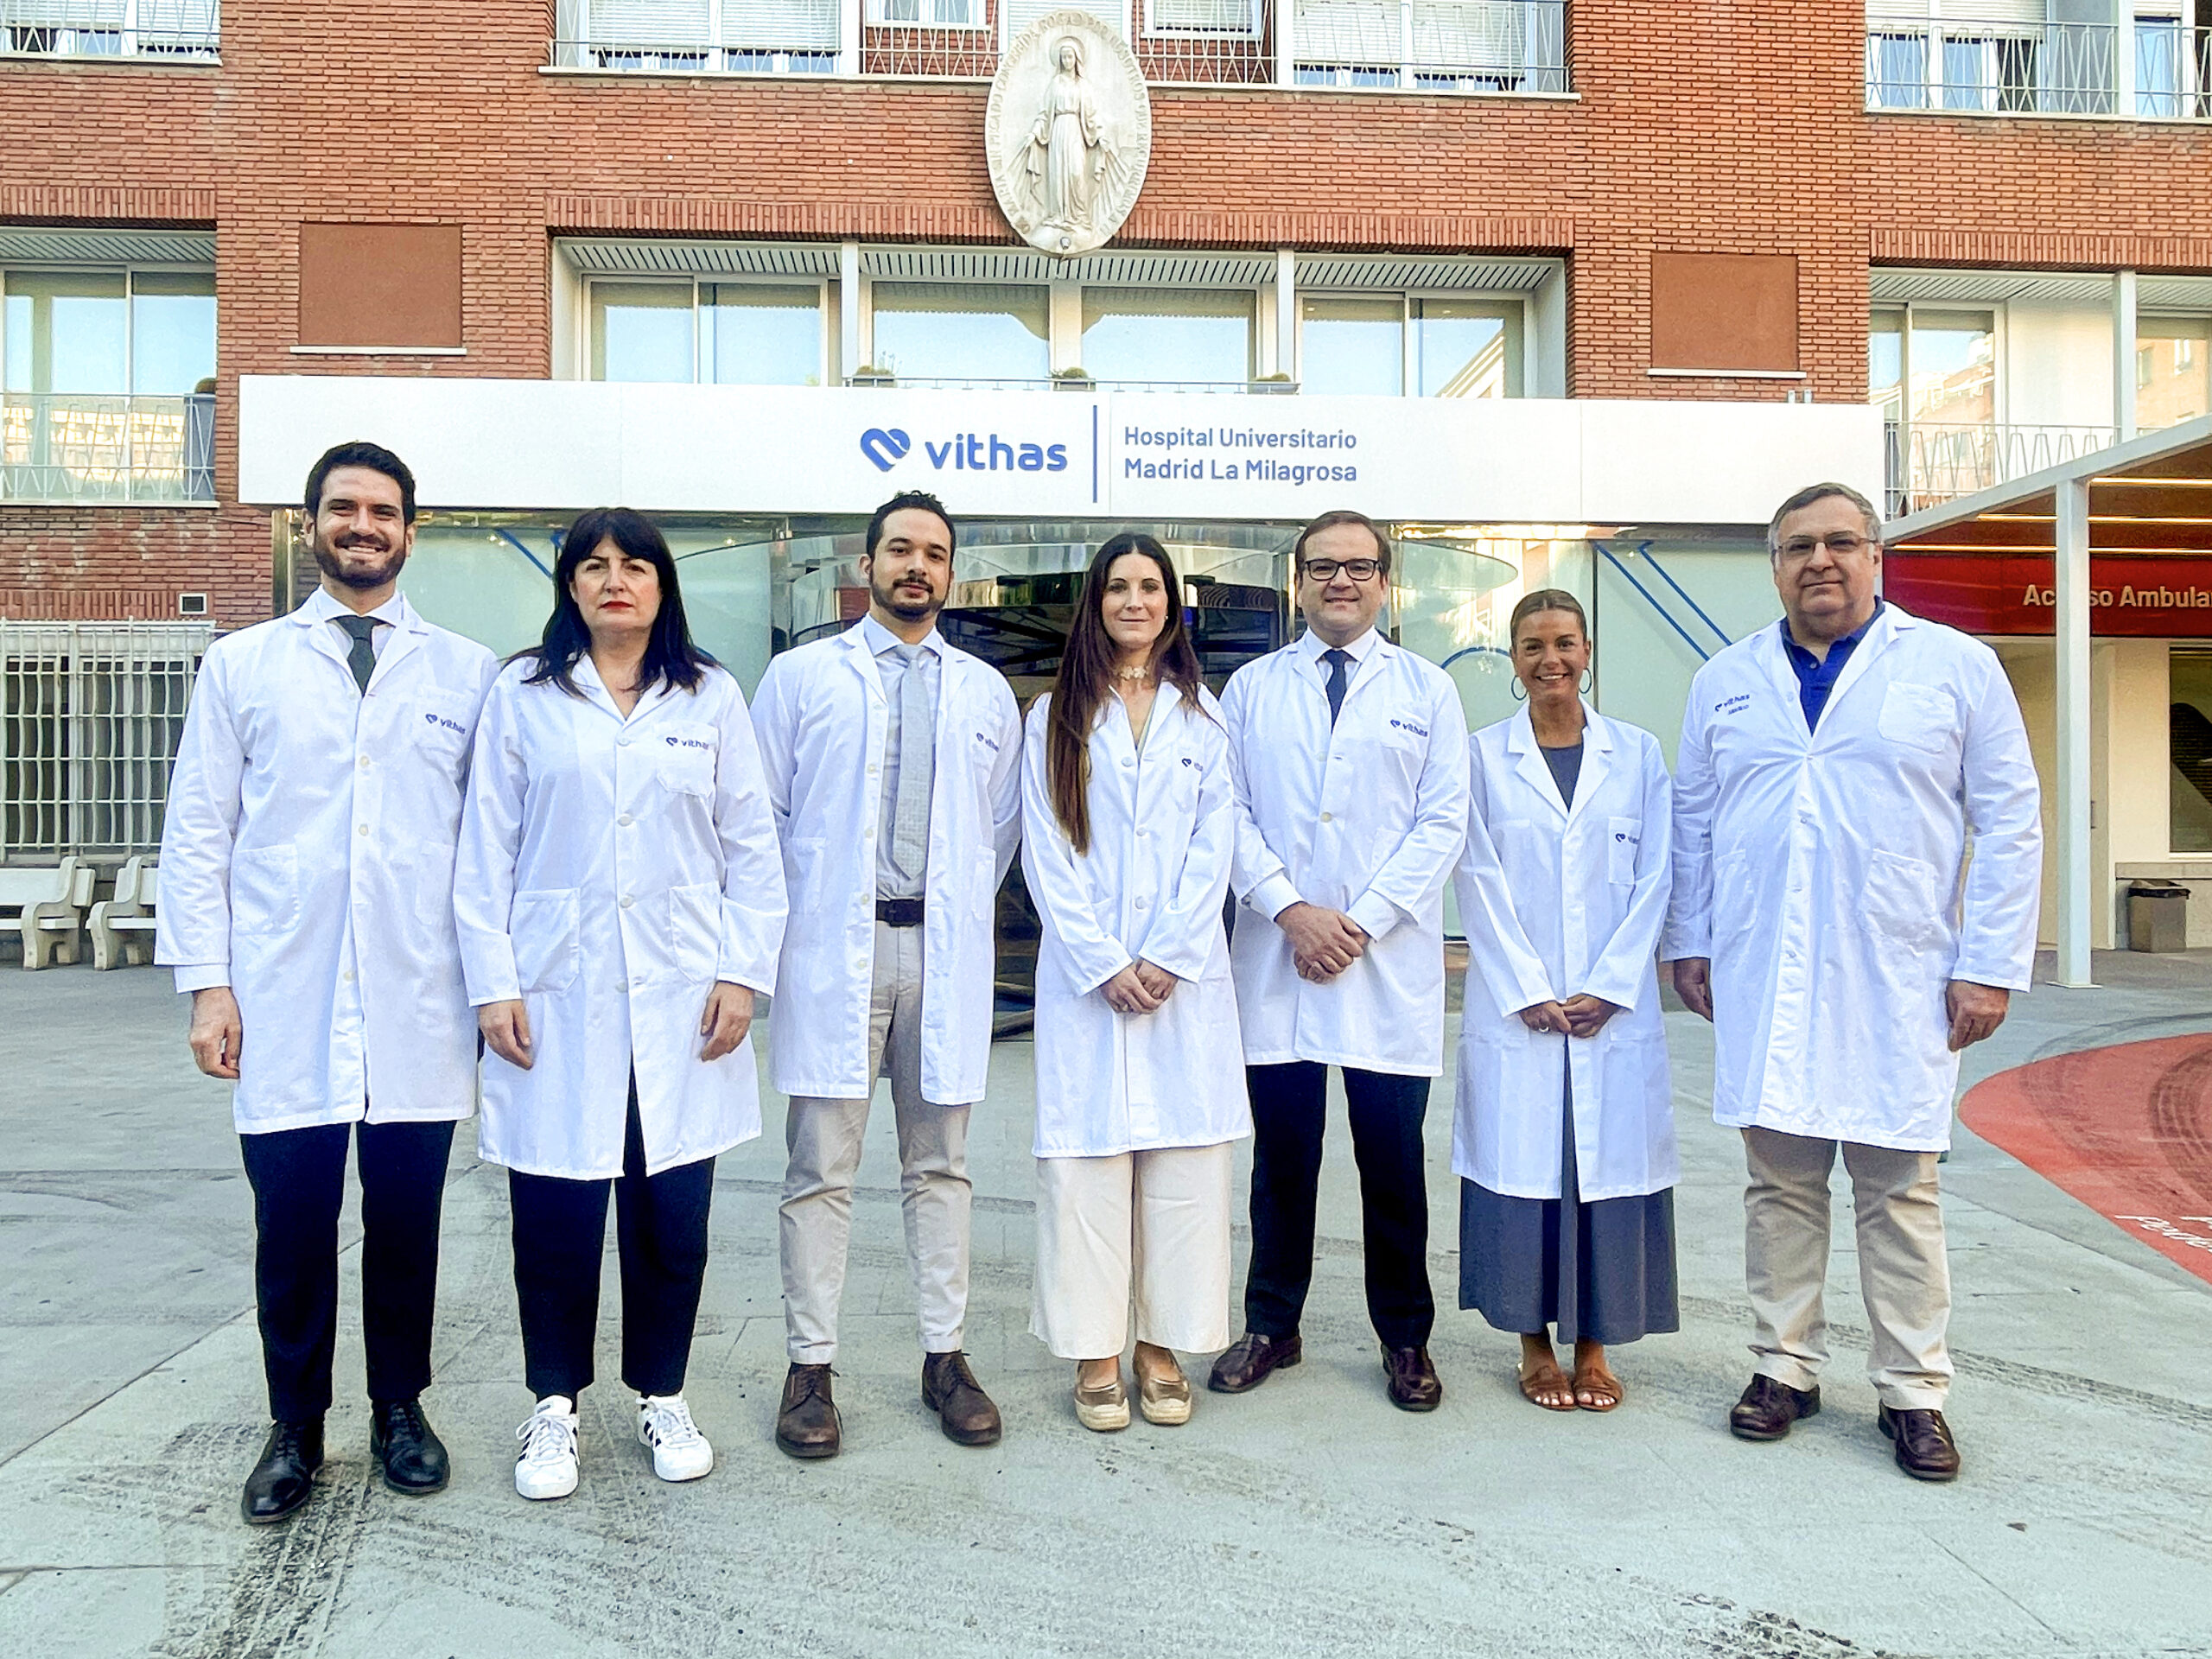 El Hospital Universitario Vithas Madrid La Milagrosa incorpora al Instituto de Cirugía Urológica Avanzada (ICUA)